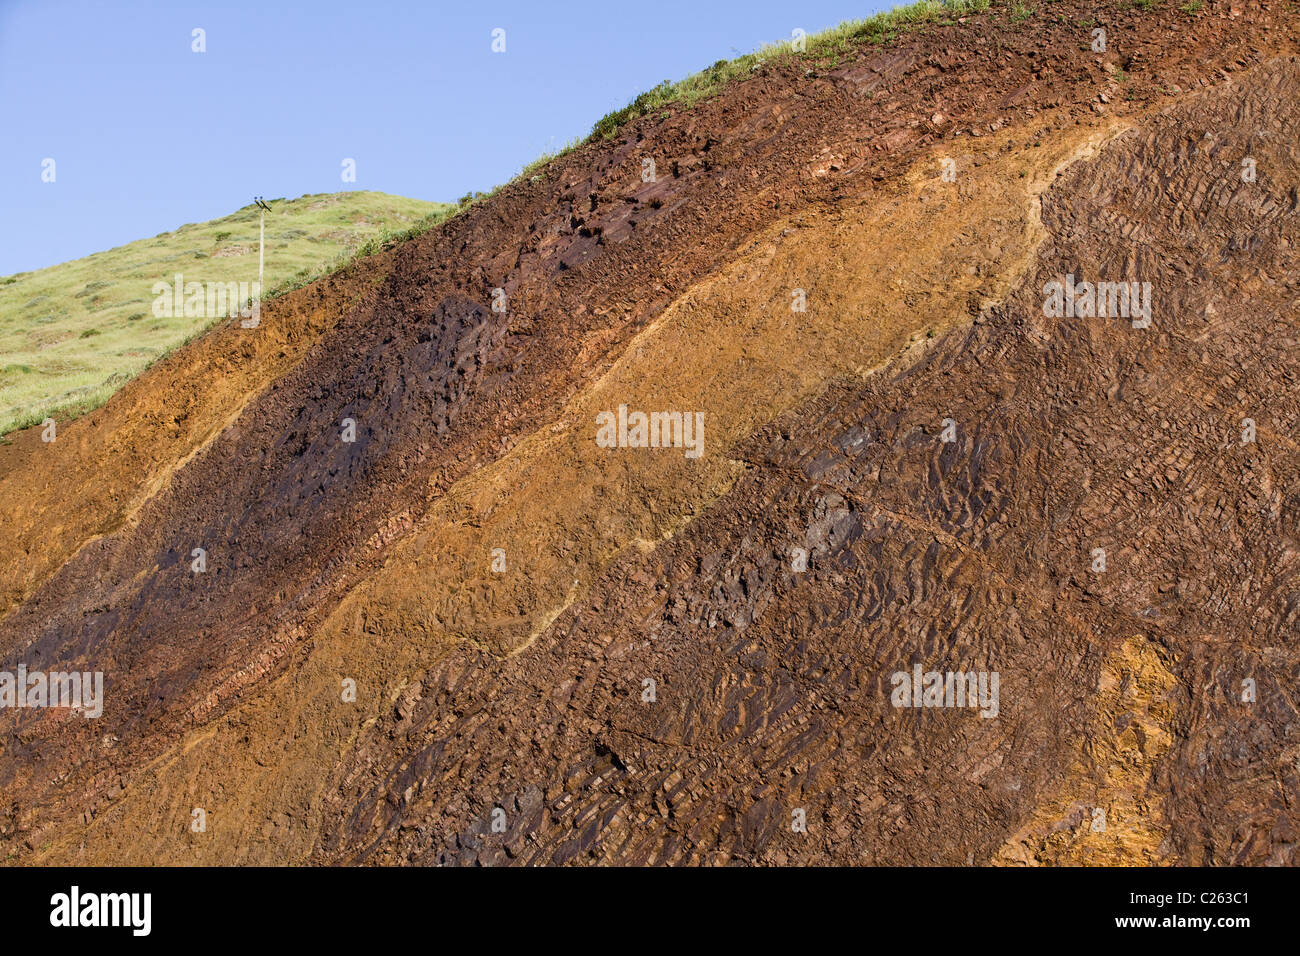 Una vista de sección transversal de la ladera de la colina, mostrando diferentes capas de roca y suelo de California - EE.UU. Foto de stock